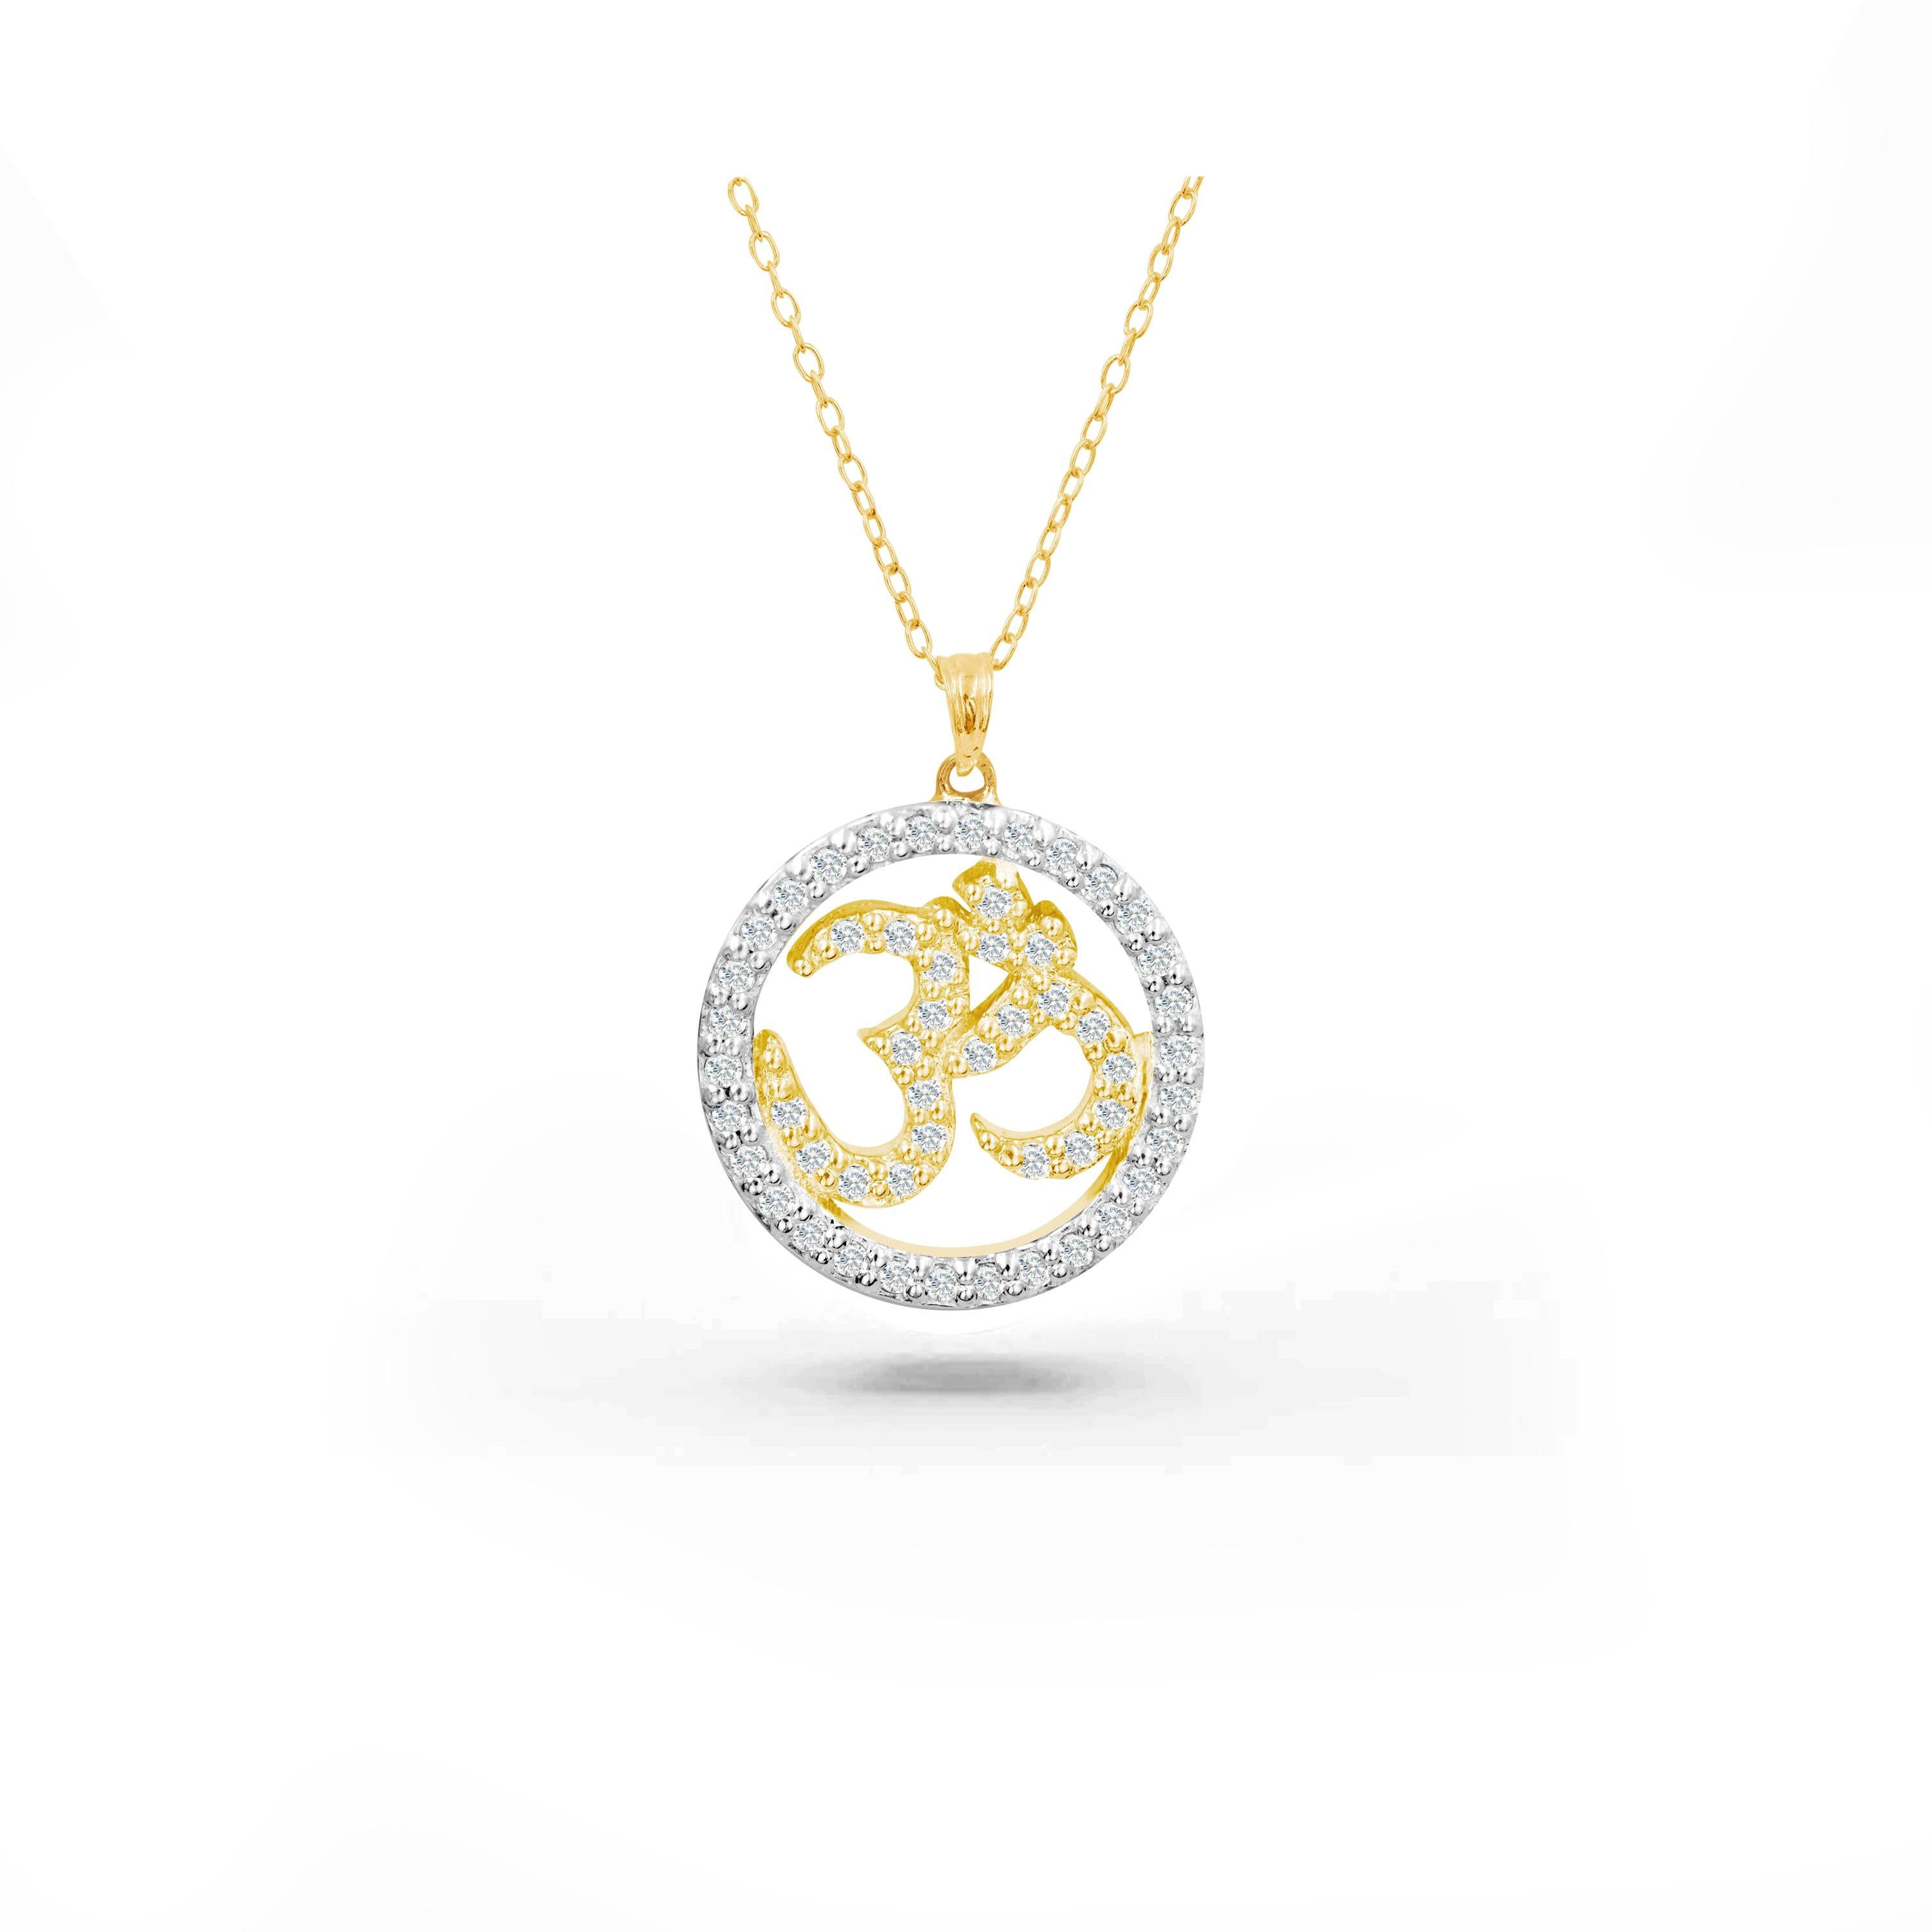 Le collier en diamants OM Halo, fabriqué à la main, est idéal à porter au quotidien pour apporter paix intérieure et spiritualité. Nous garantissons une qualité de premier ordre avec des diamants de 0,34 carat magnifiquement sertis dans ce collier. 